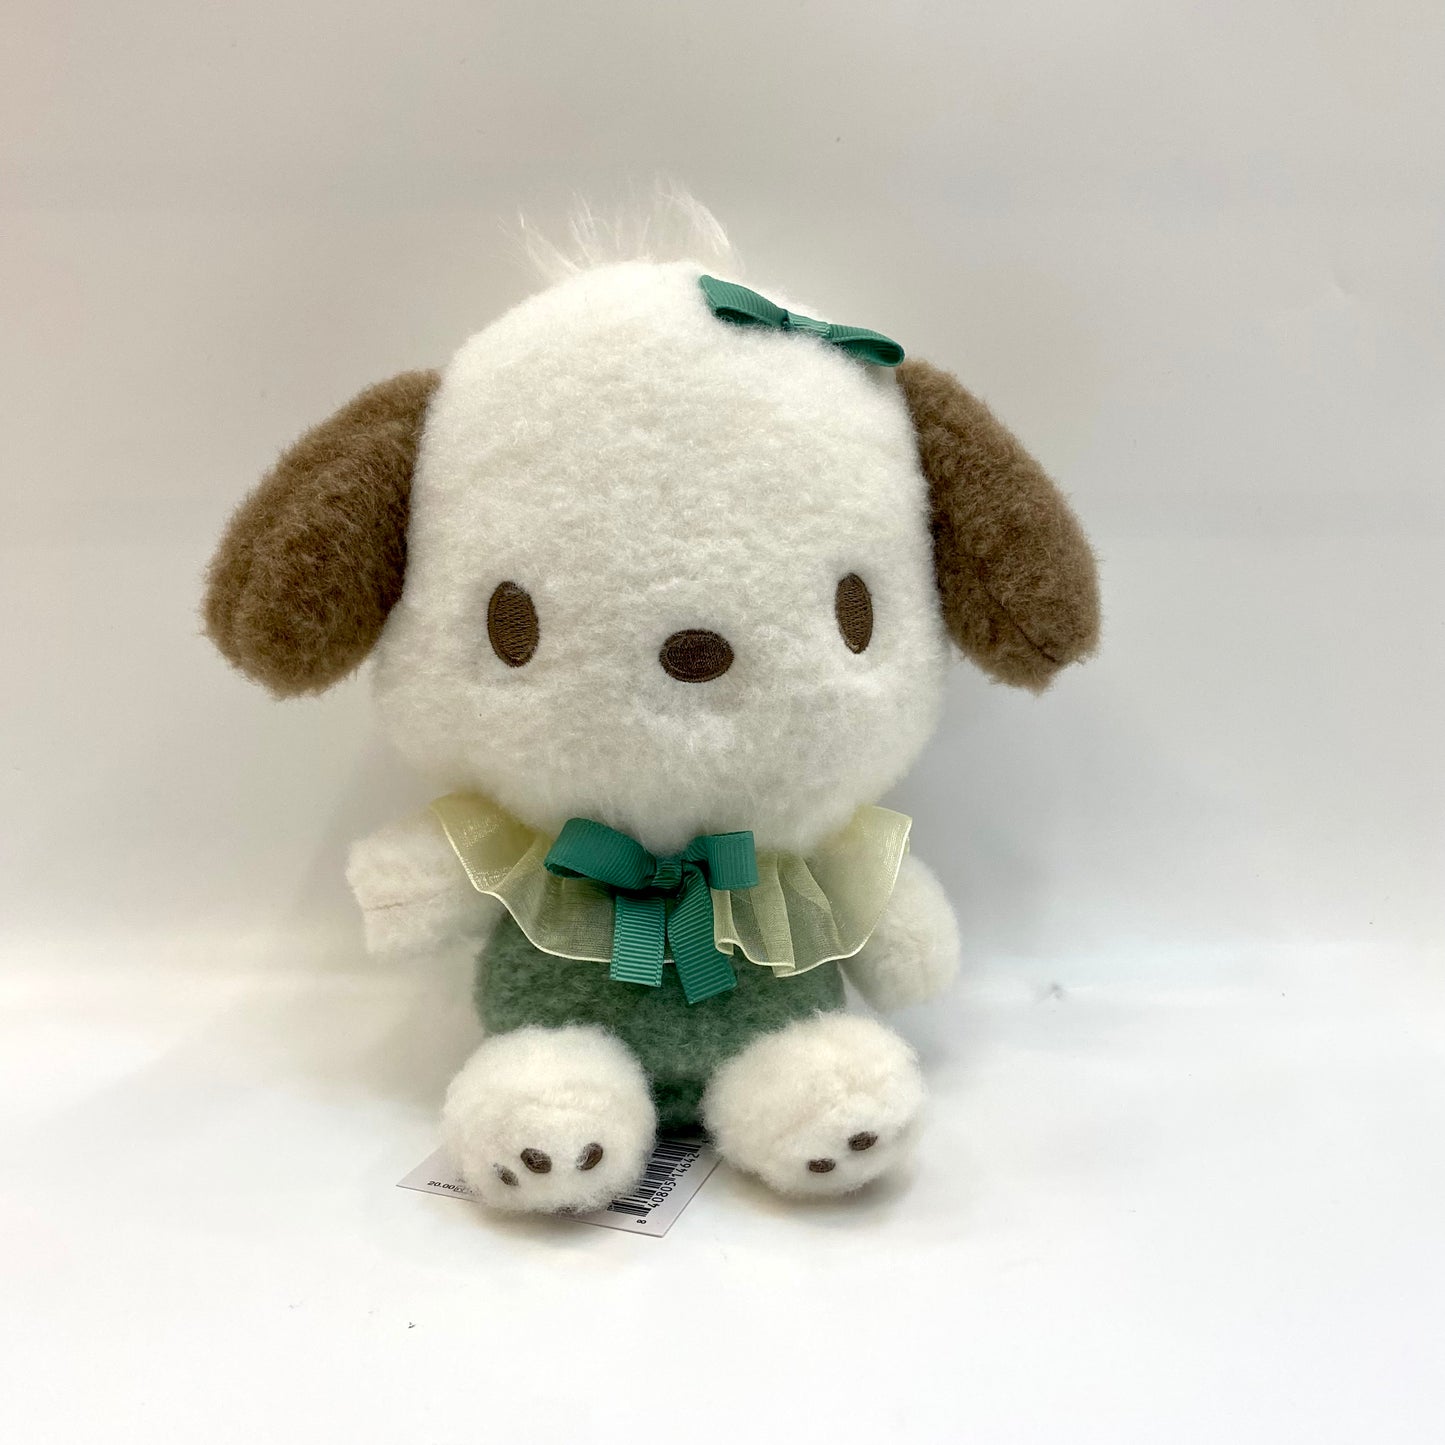 Sanrio Soft & Cuddly 7" Plush